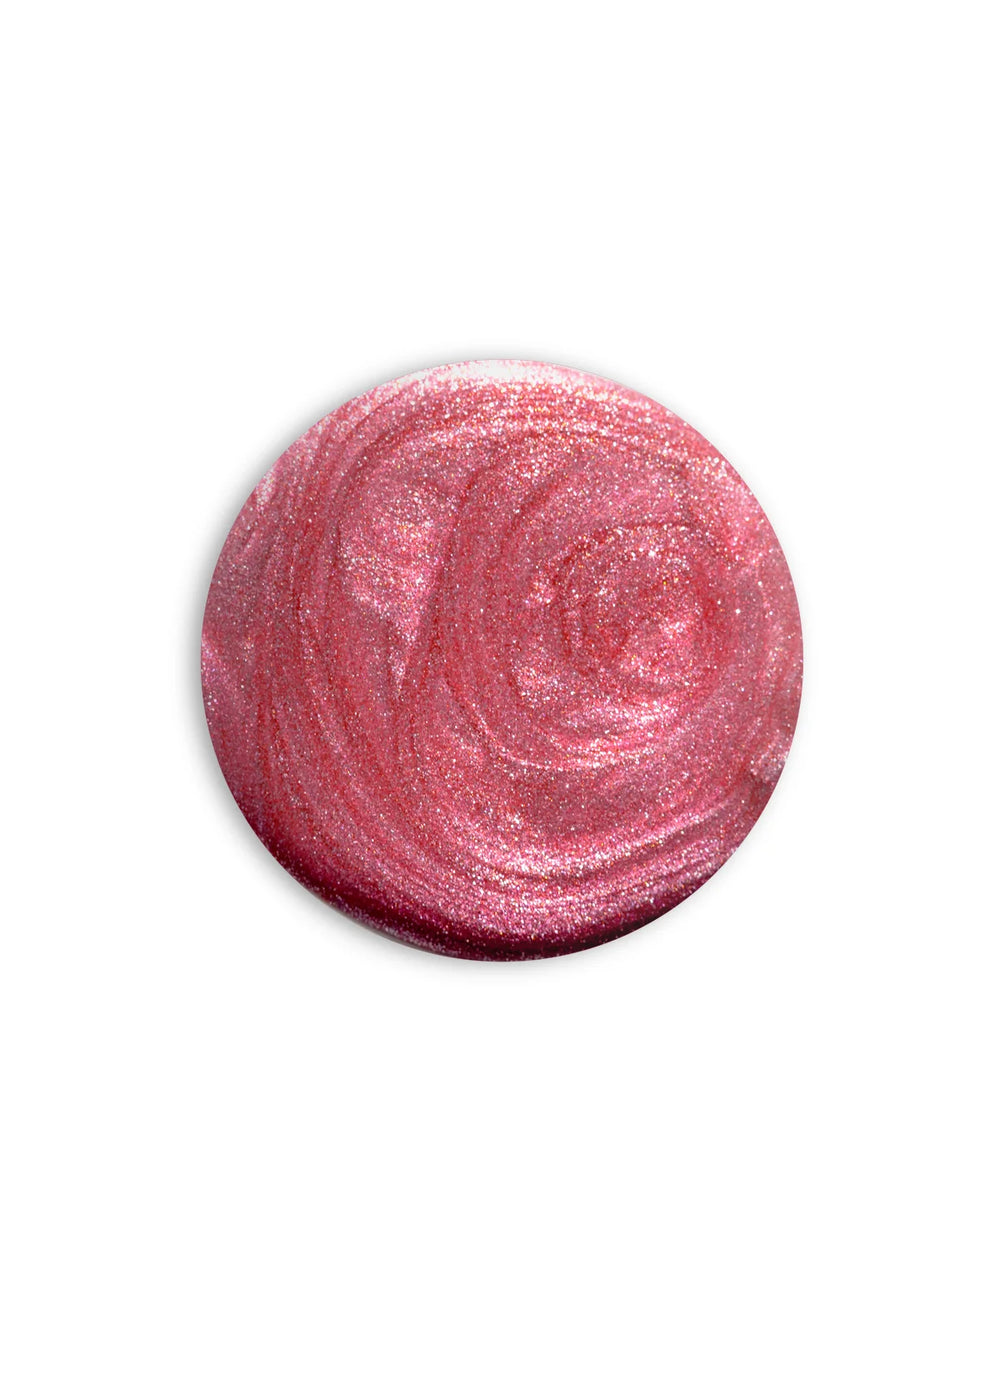 Dr's Remedy Nail Polish - Reflective Rose Shimmer 15ml.